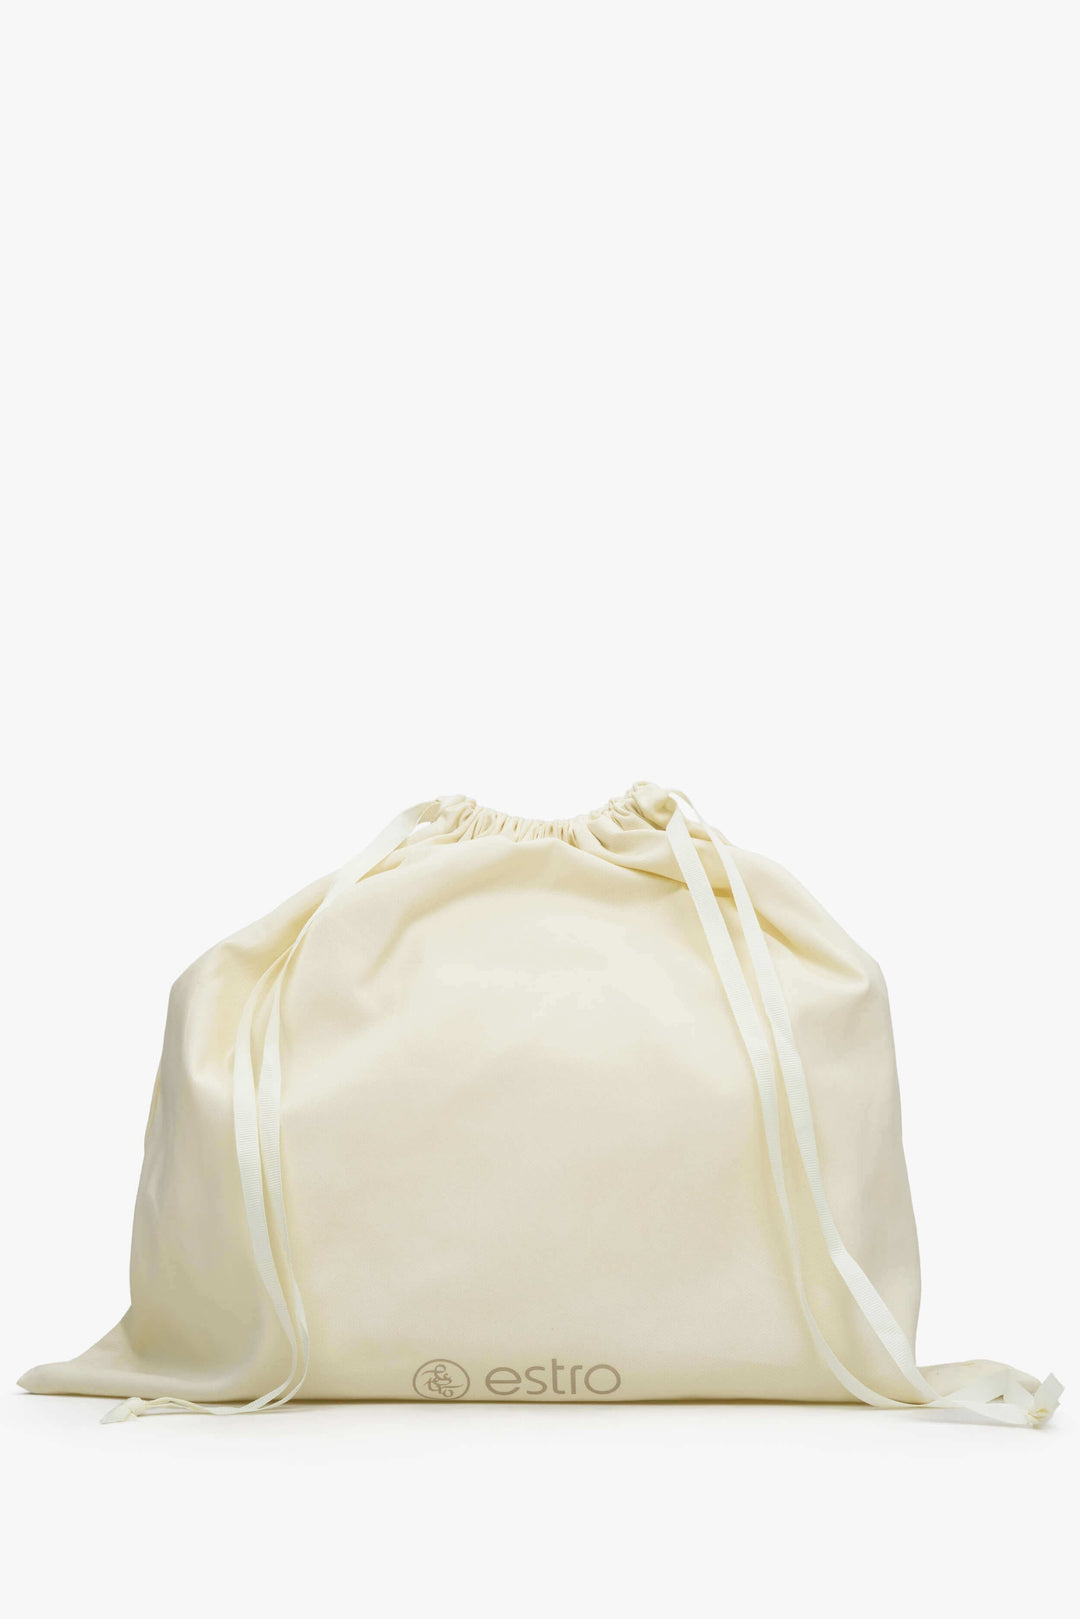 Women's Light Beige Baguette Handbag made of Genuine Italian Leather Estro ER00111944